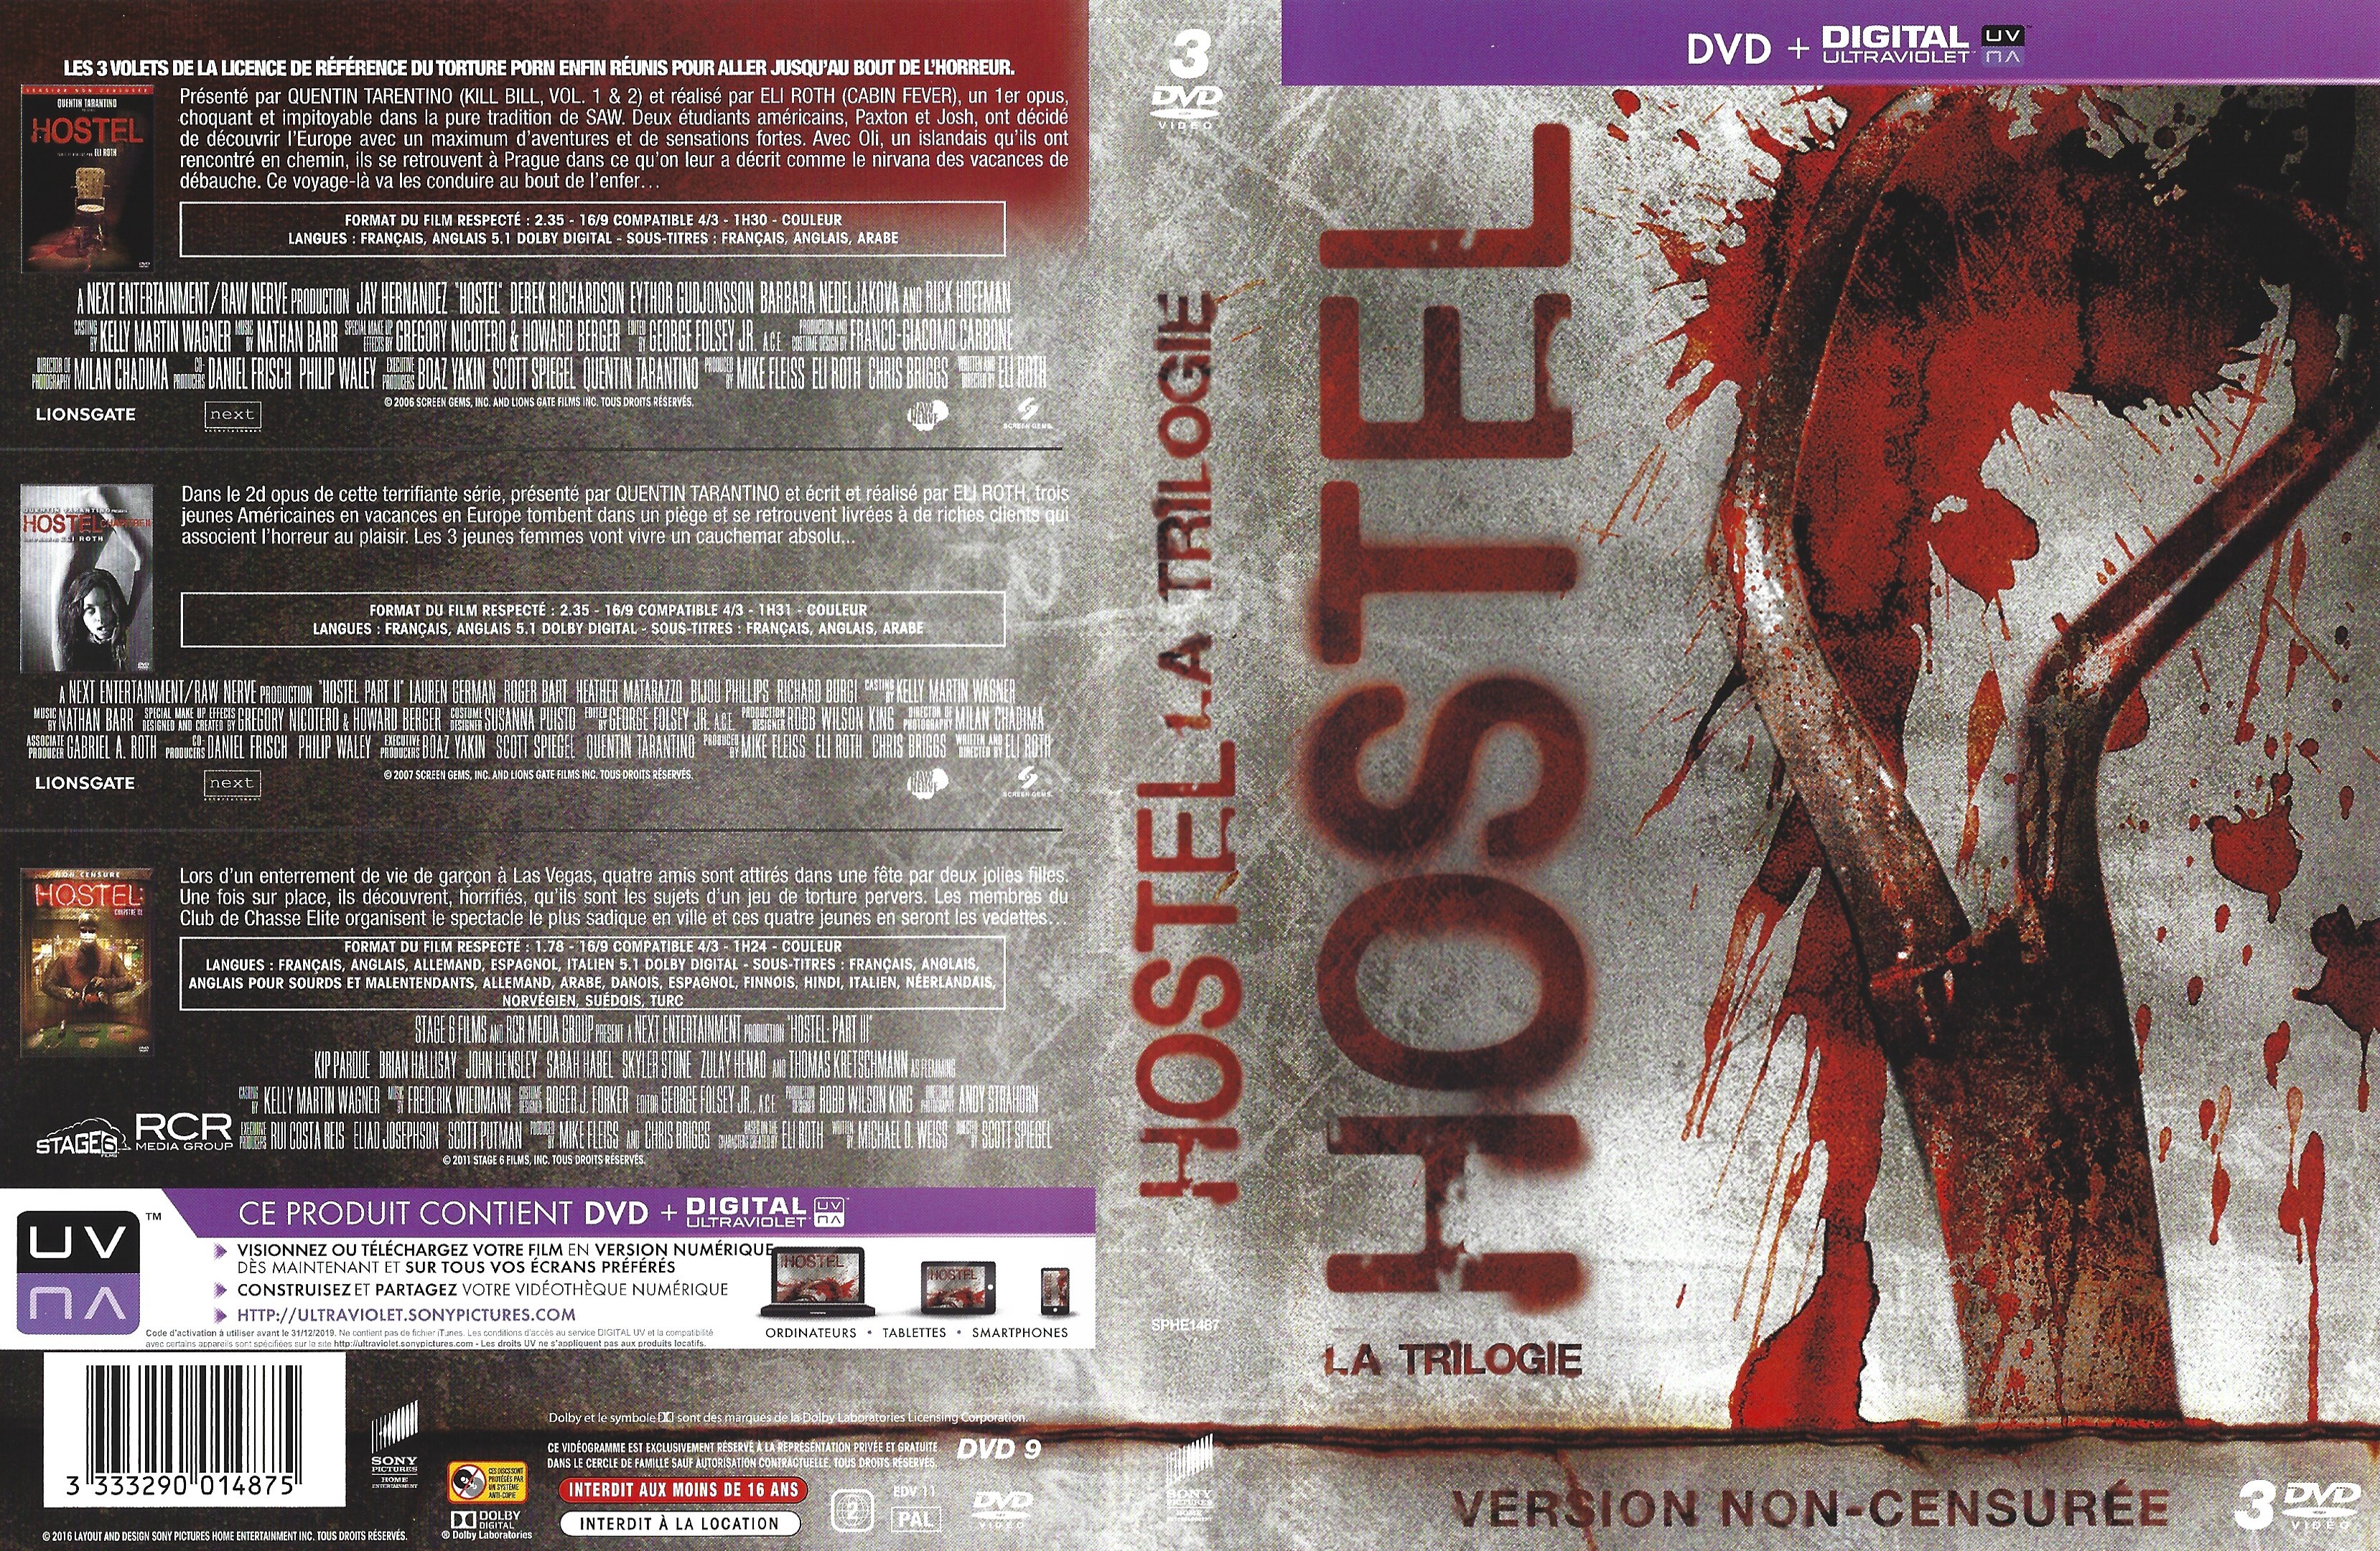 Jaquette DVD Hostel trilogie